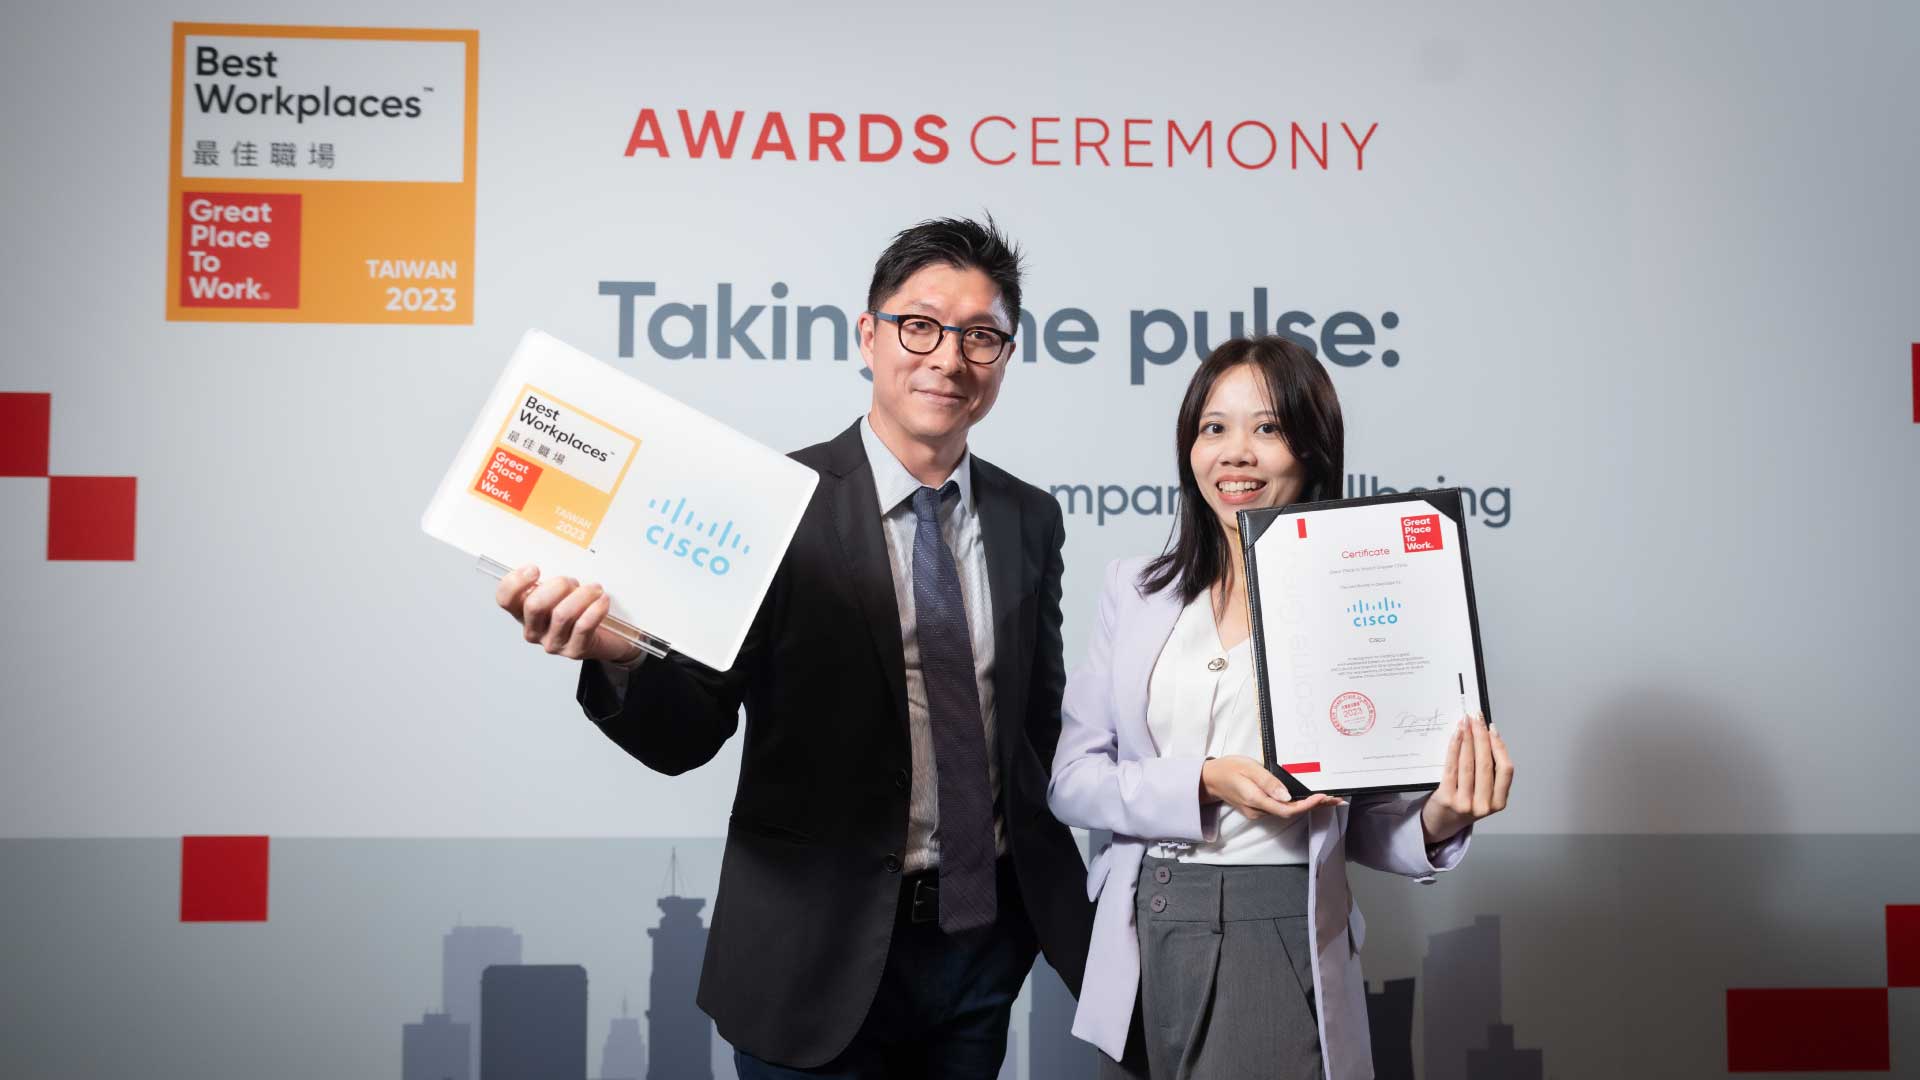 Awards-Ceremony-Taking-the-pulse-Taiwan-07